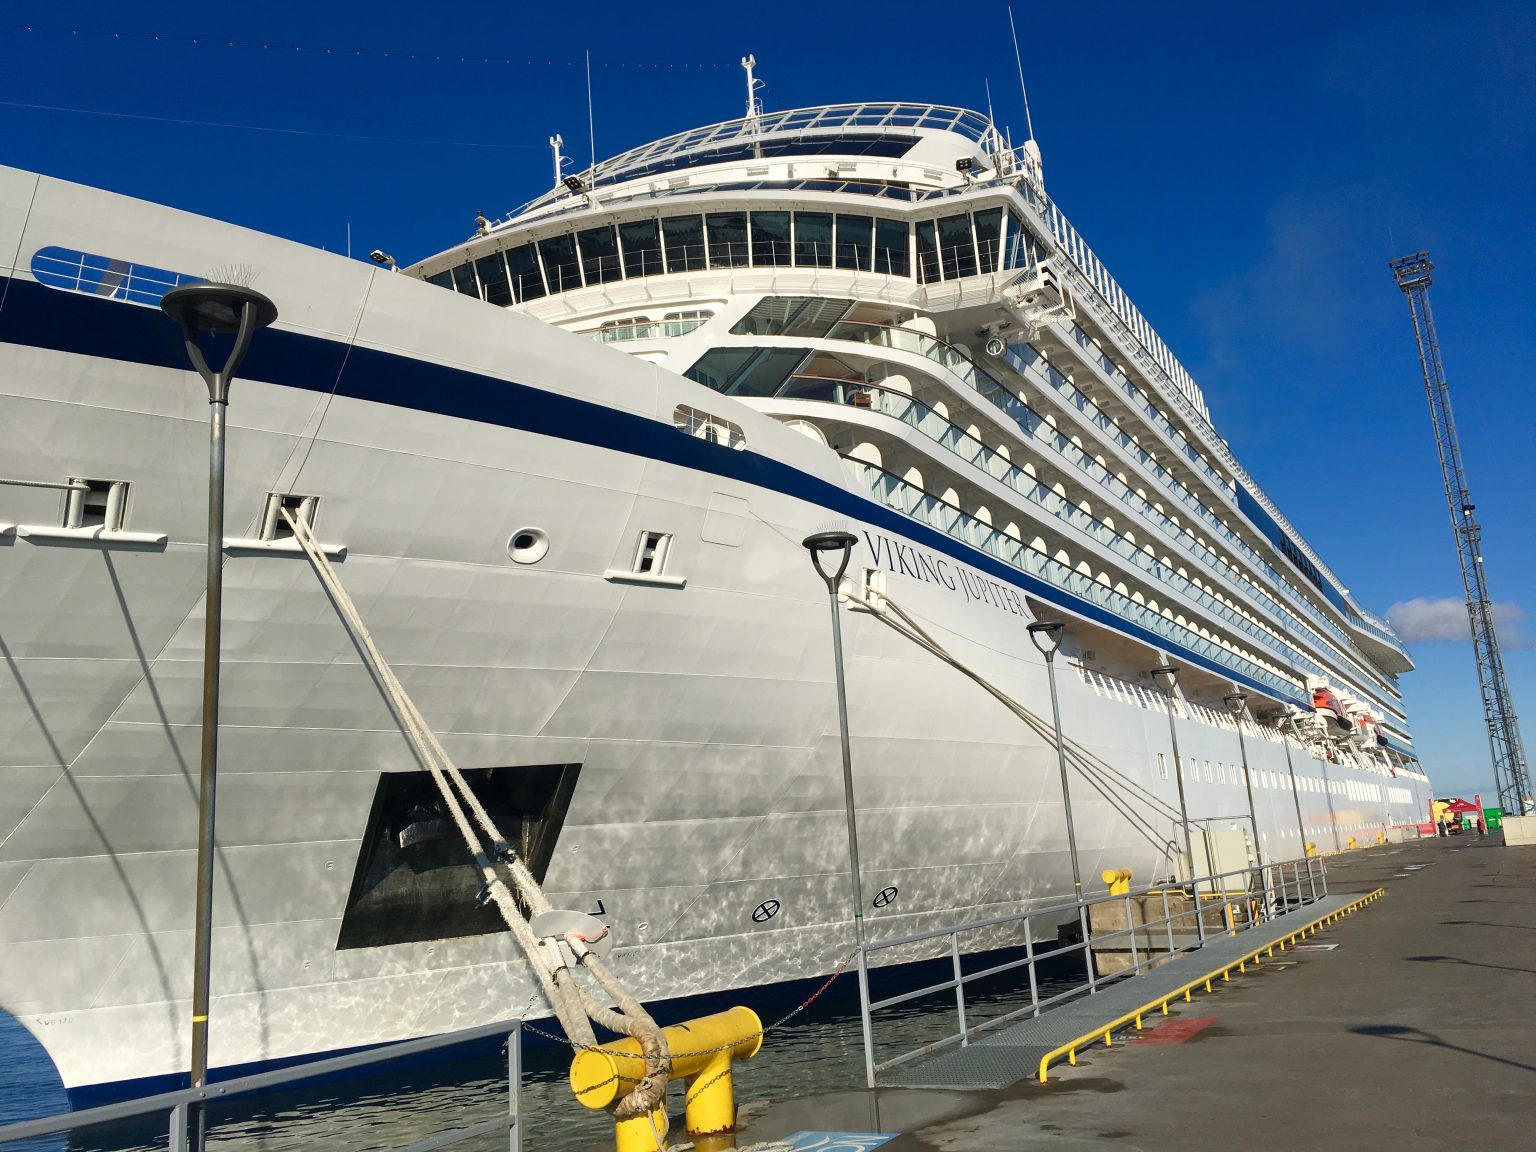 viking jupiter iceland cruise reviews